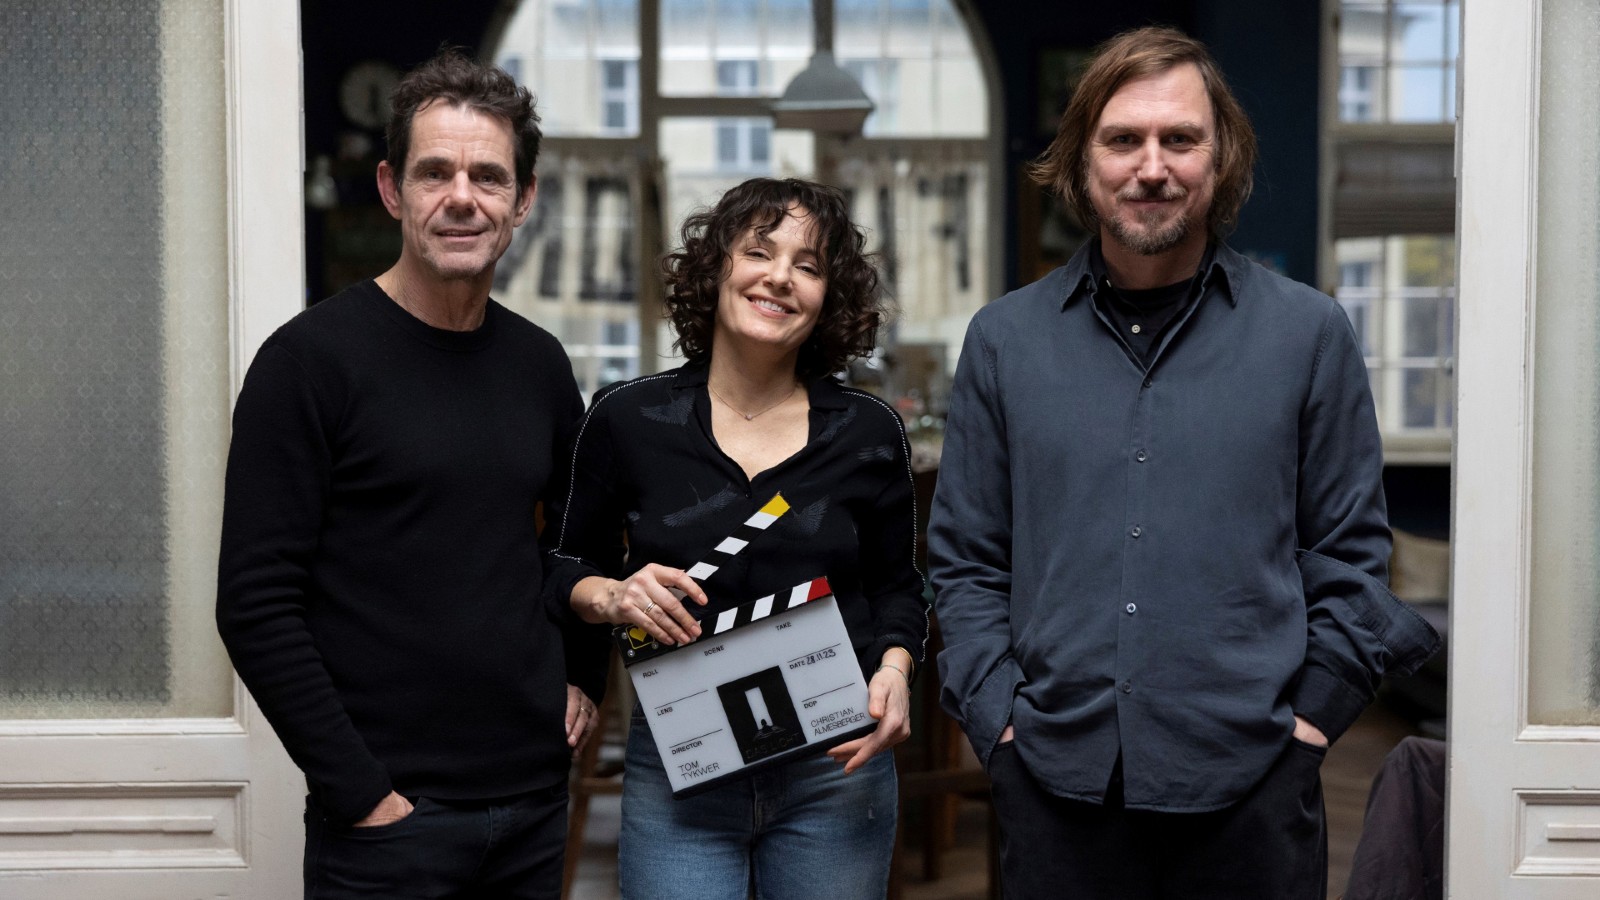 (from left): Tom Tykwer, Nicolette Krebitz, Lars Eidinger on the set of 'Das Licht'